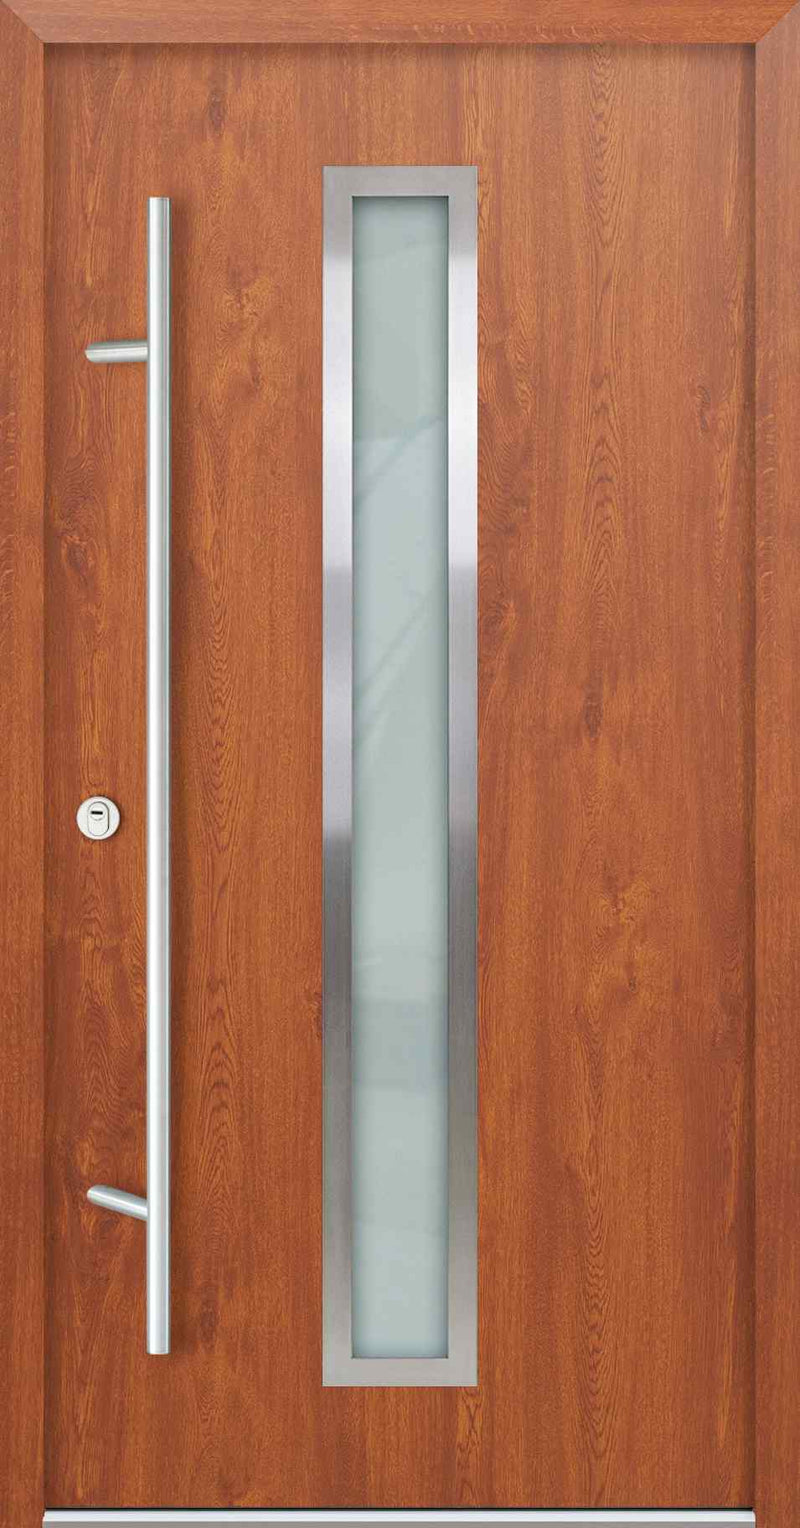 Turenwerke AC68 Design 01 Steel Door - Golden Oak